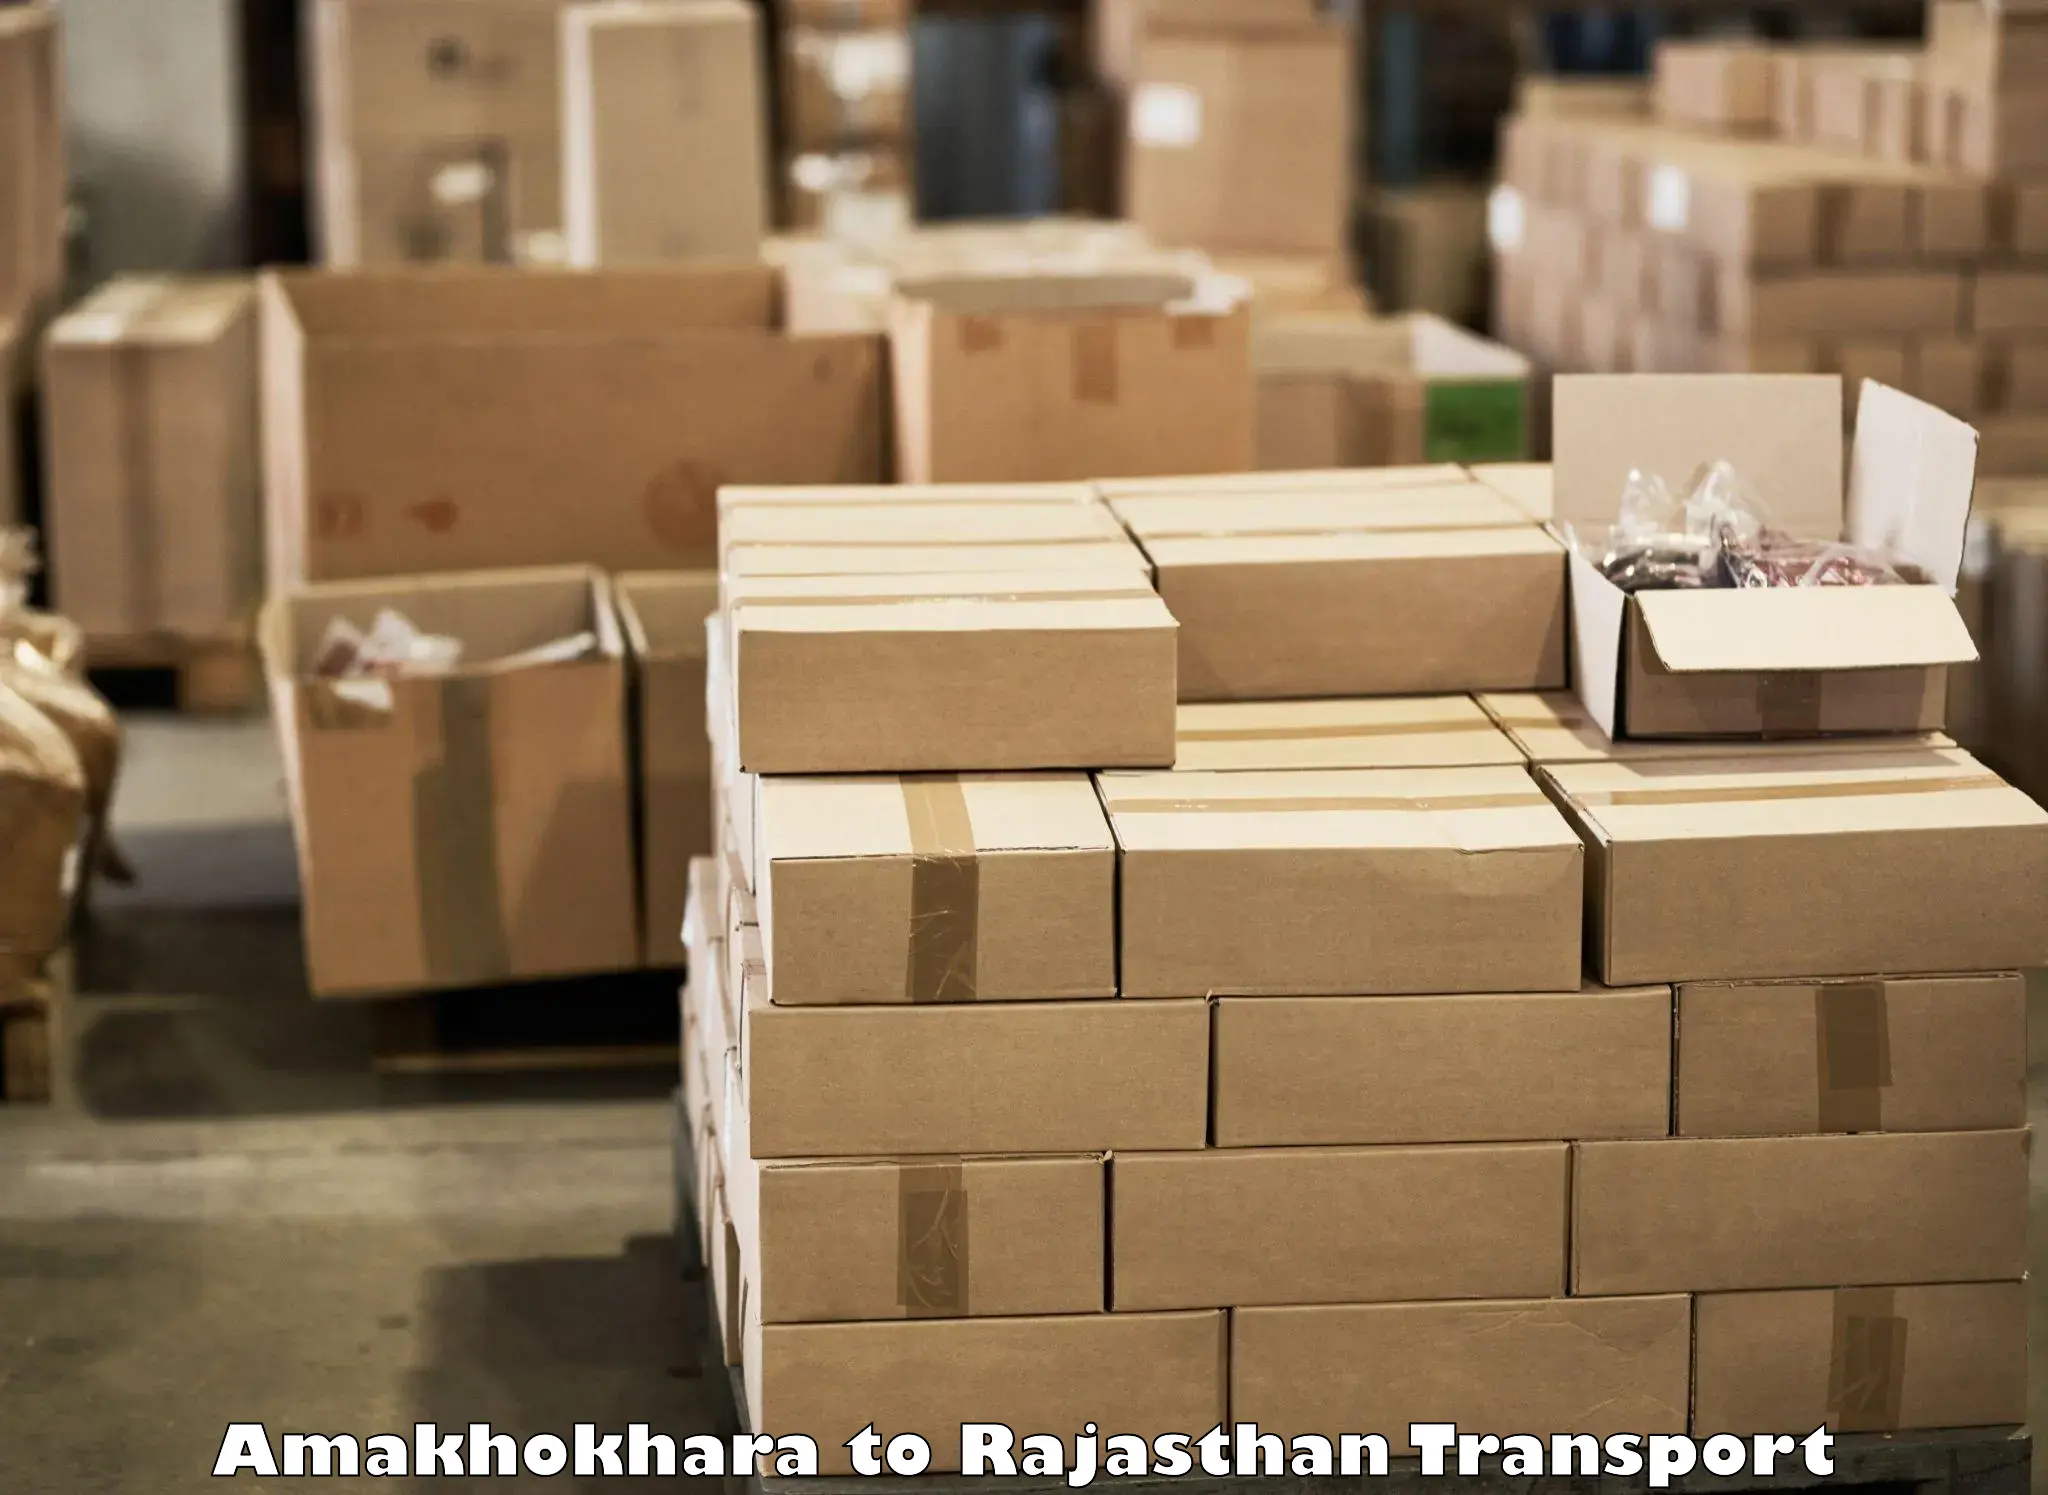 Shipping services Amakhokhara to Jalore